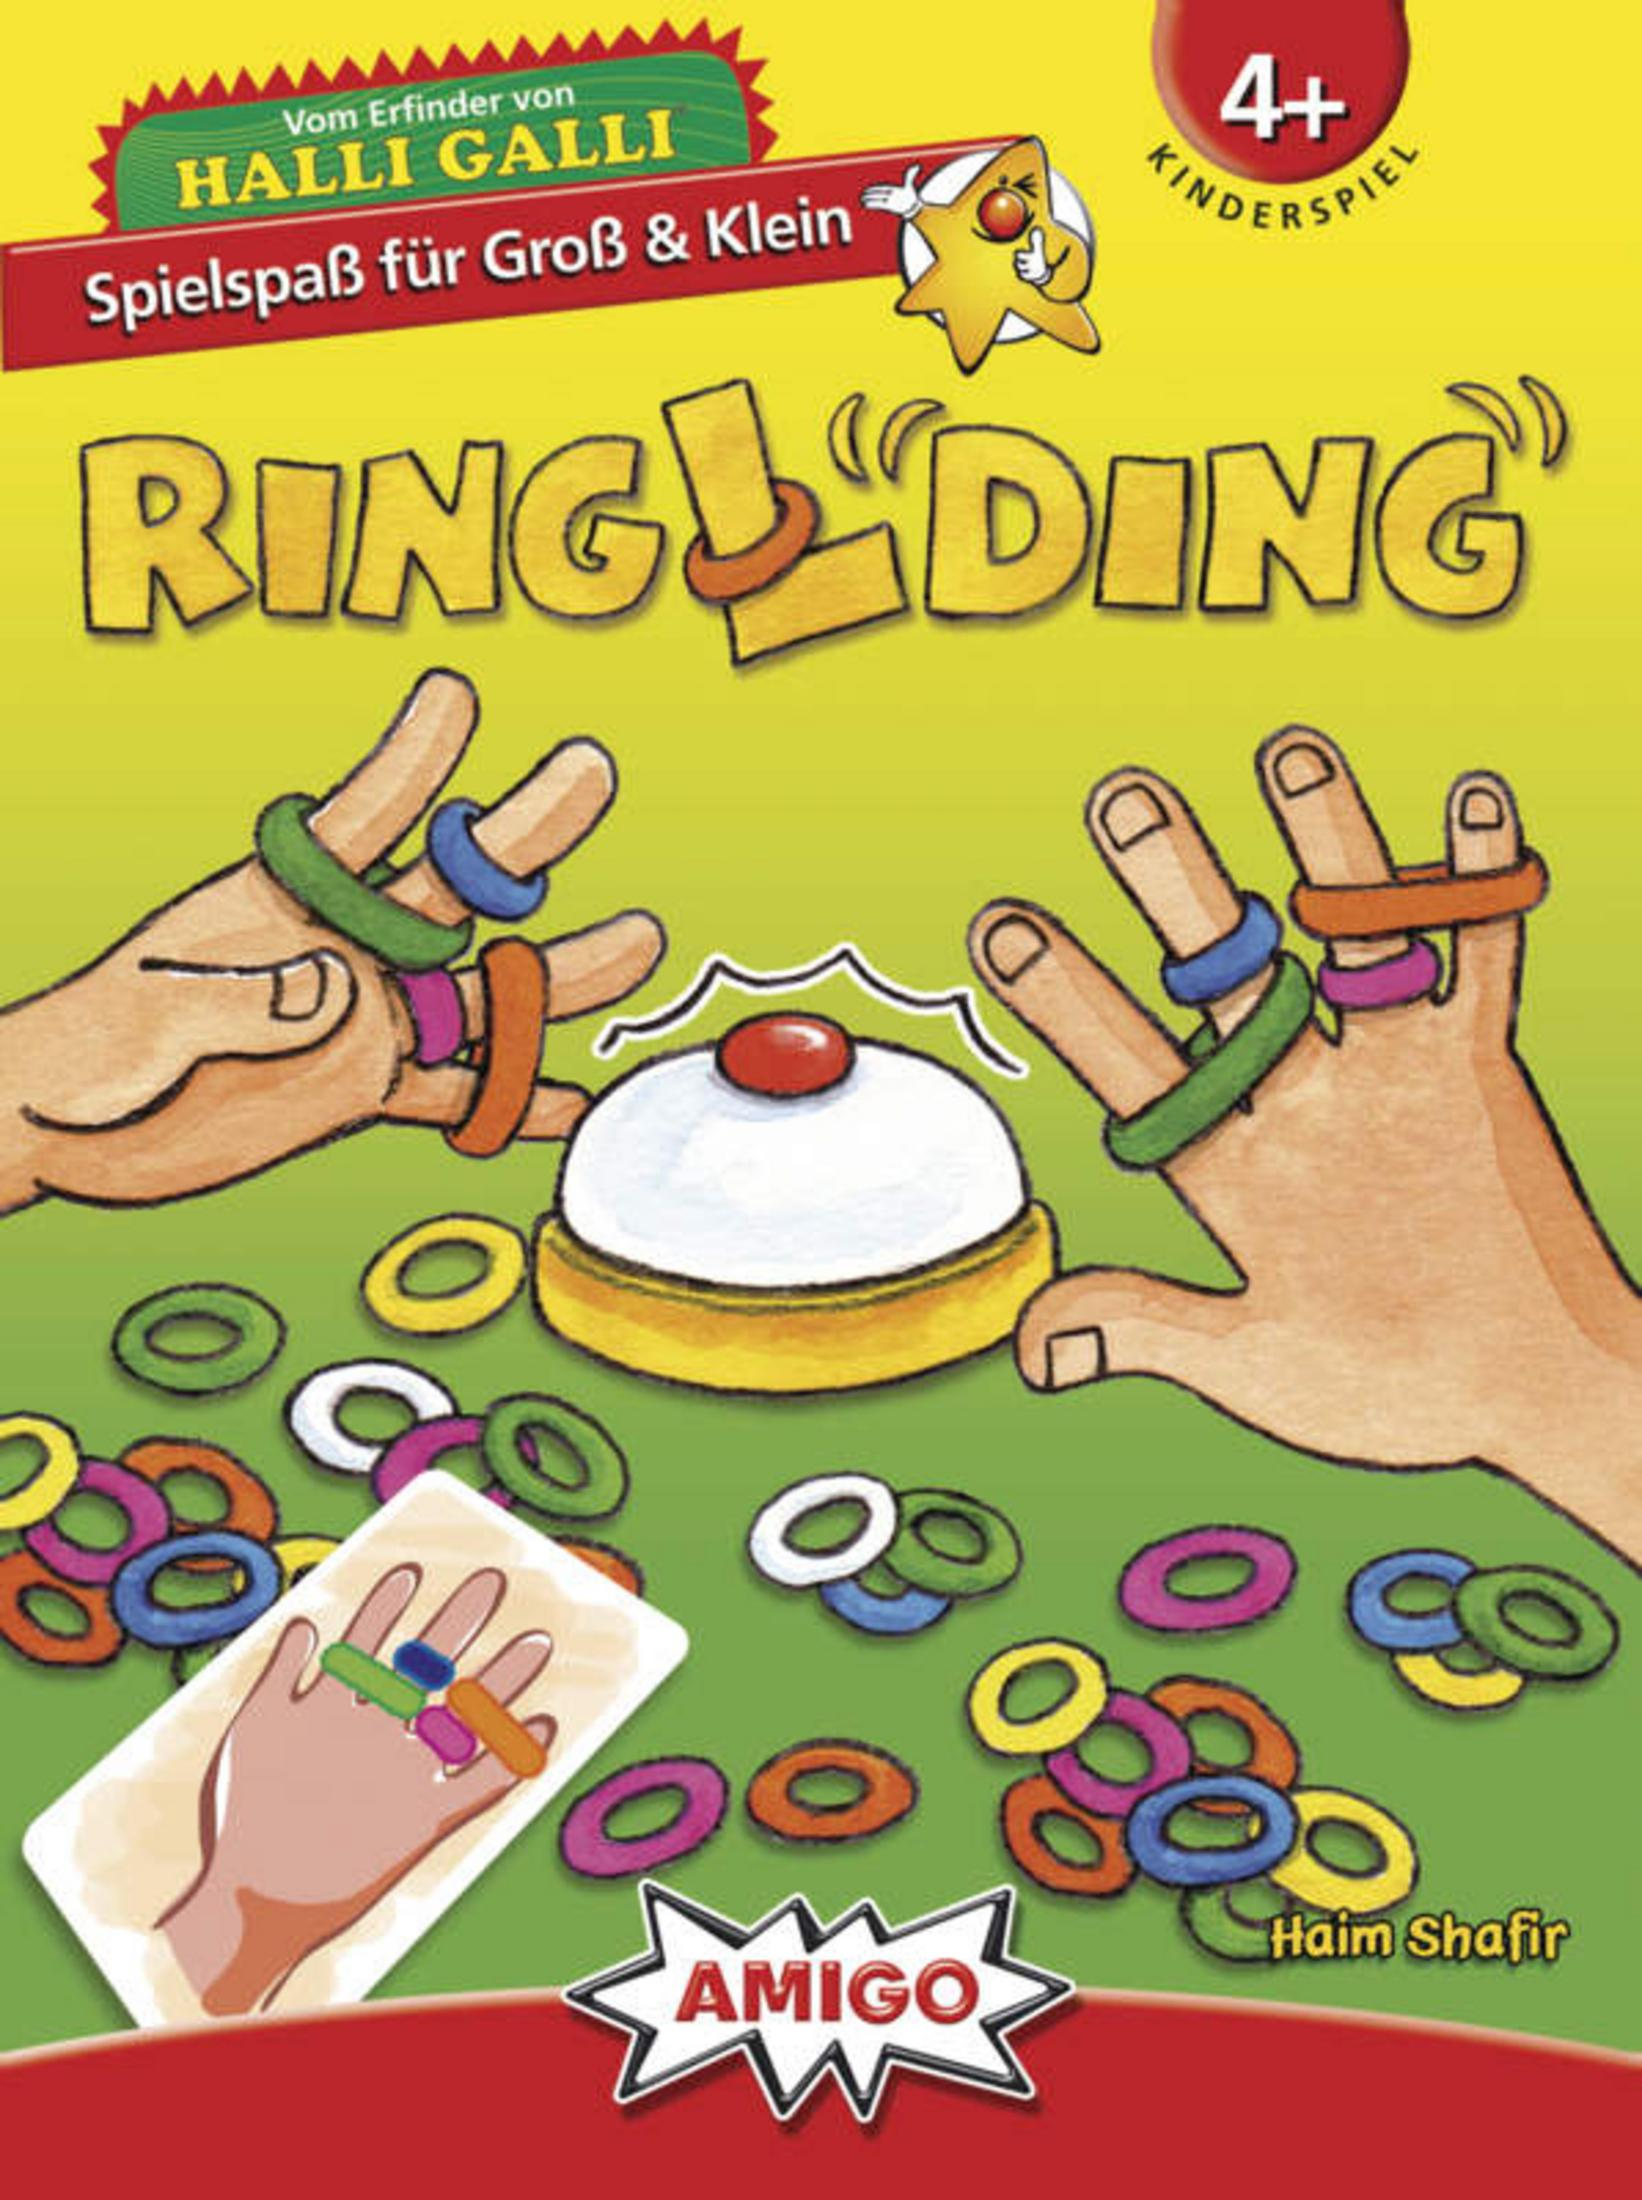 AMIGO 01735 RINGLDING Kinderspiel